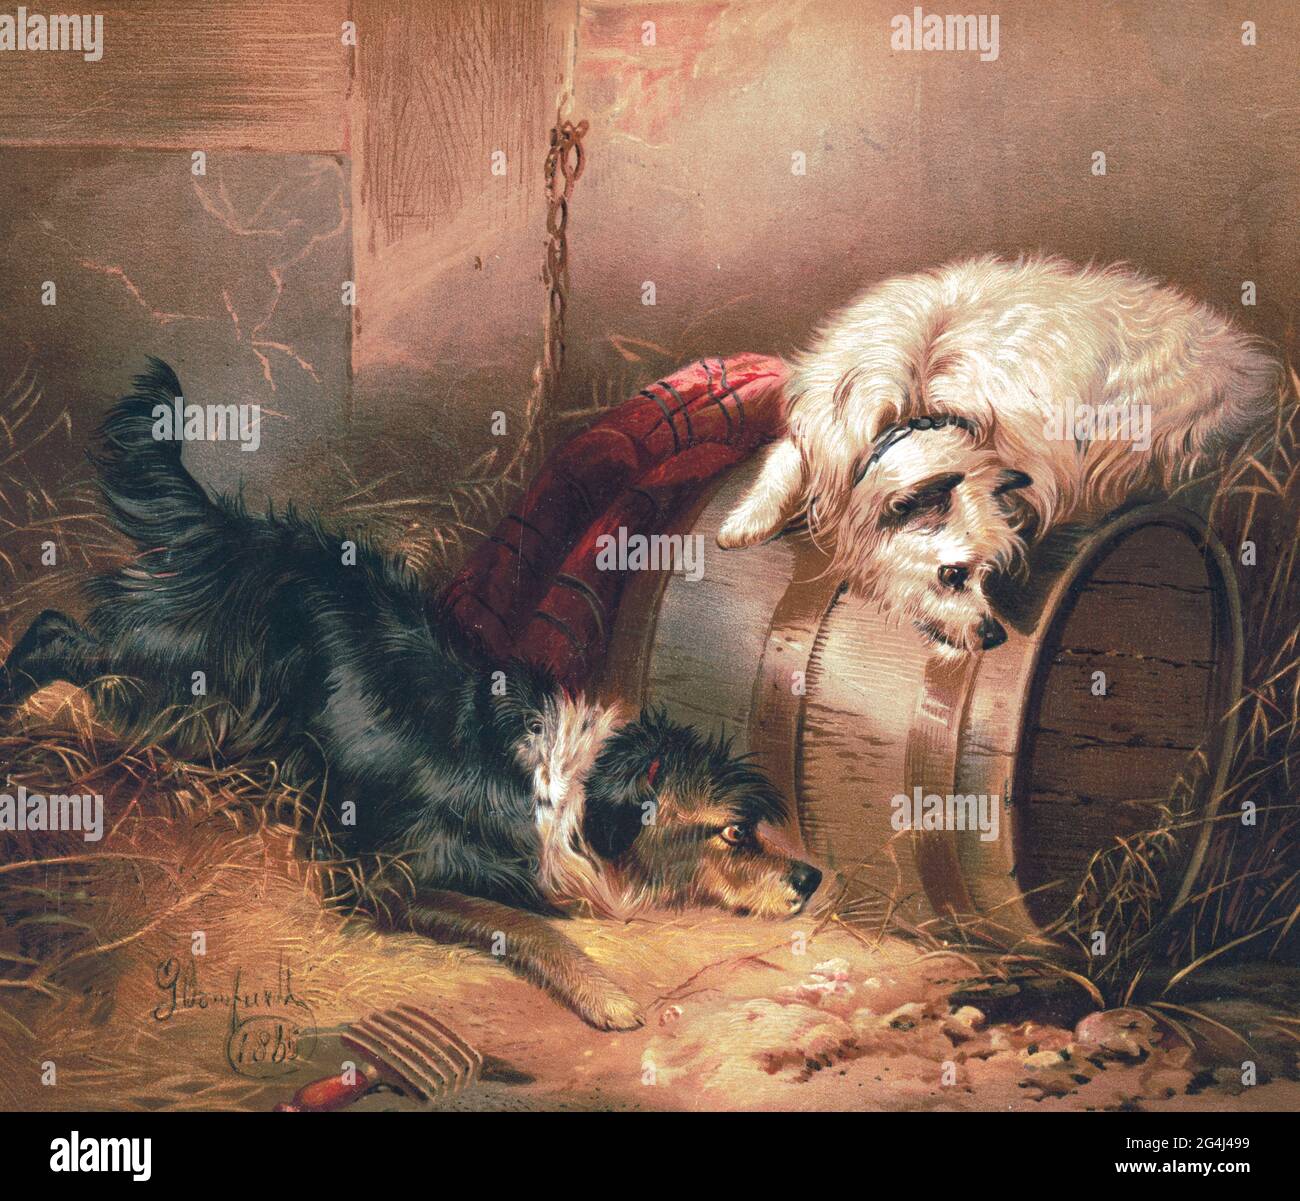 Große Erwartungen - Drucken zeigt zwei Hunde in einer Scheune, einer ruht  auf einem Fass und wartet geduldig in der Nähe eines Lochs im Boden, um  1876 Stockfotografie - Alamy